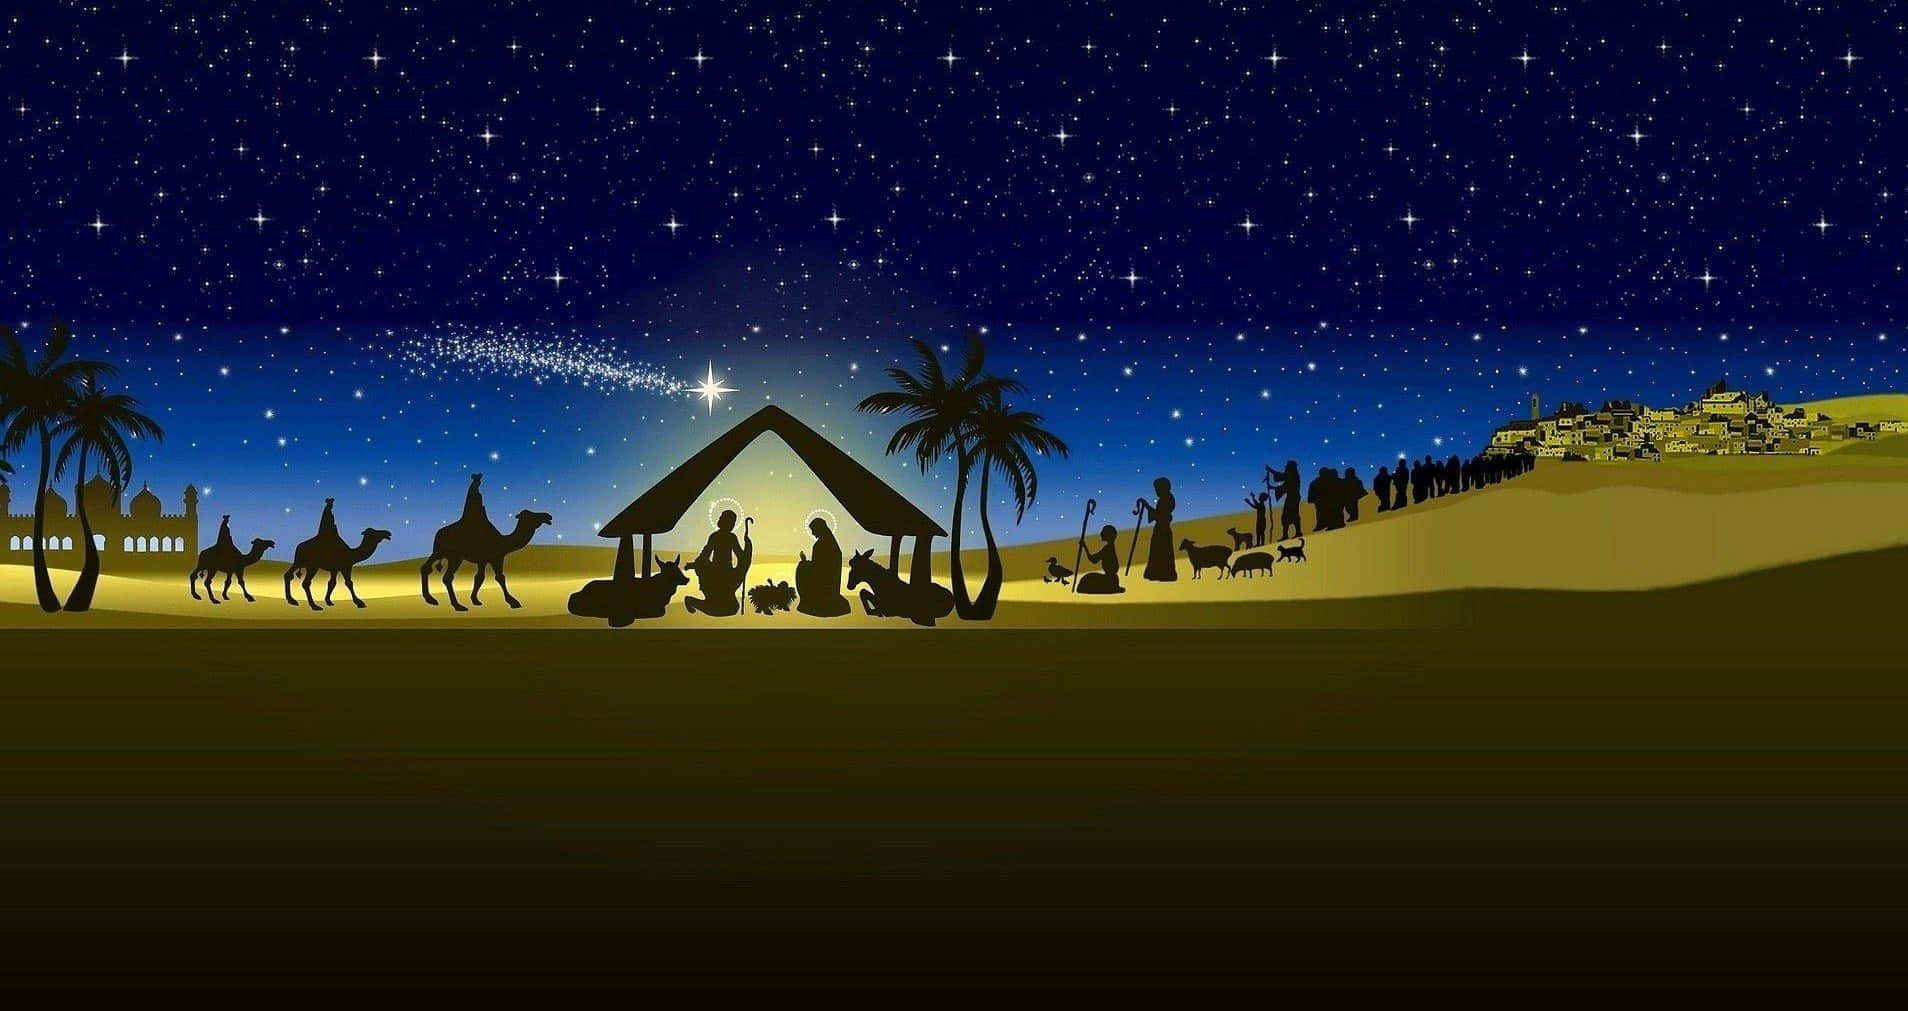 A warm and inviting nativity scene.